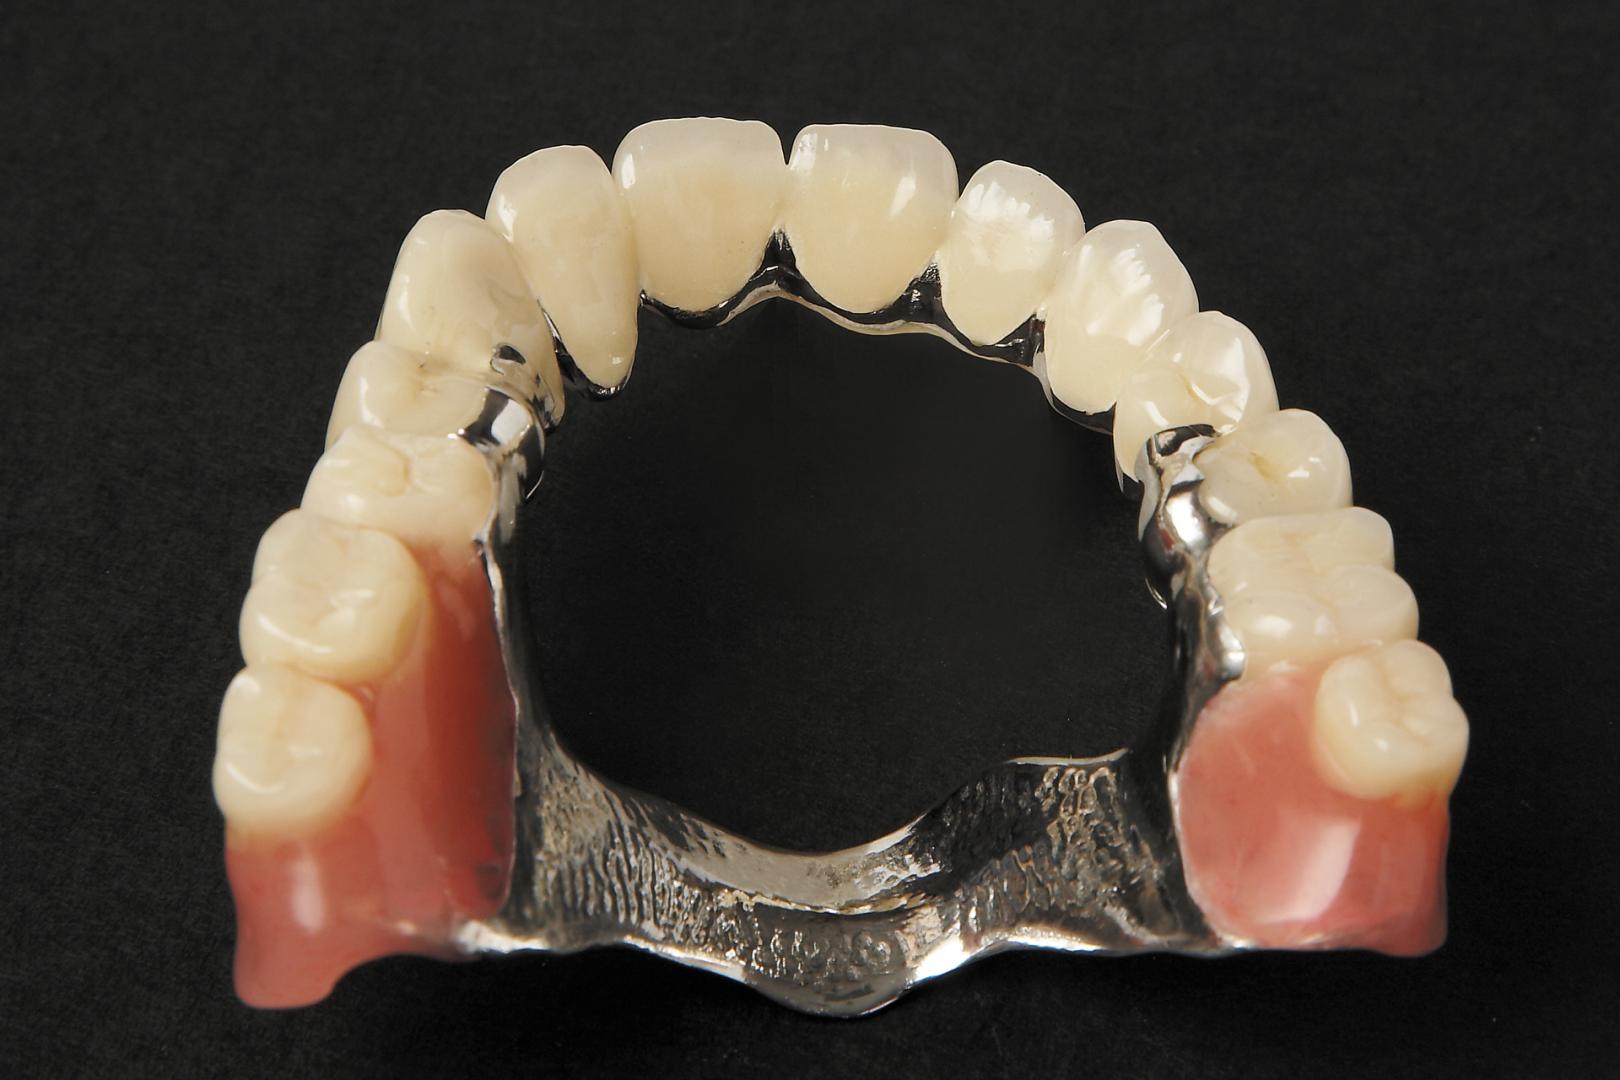 Как осуществляется протезирование зубов?